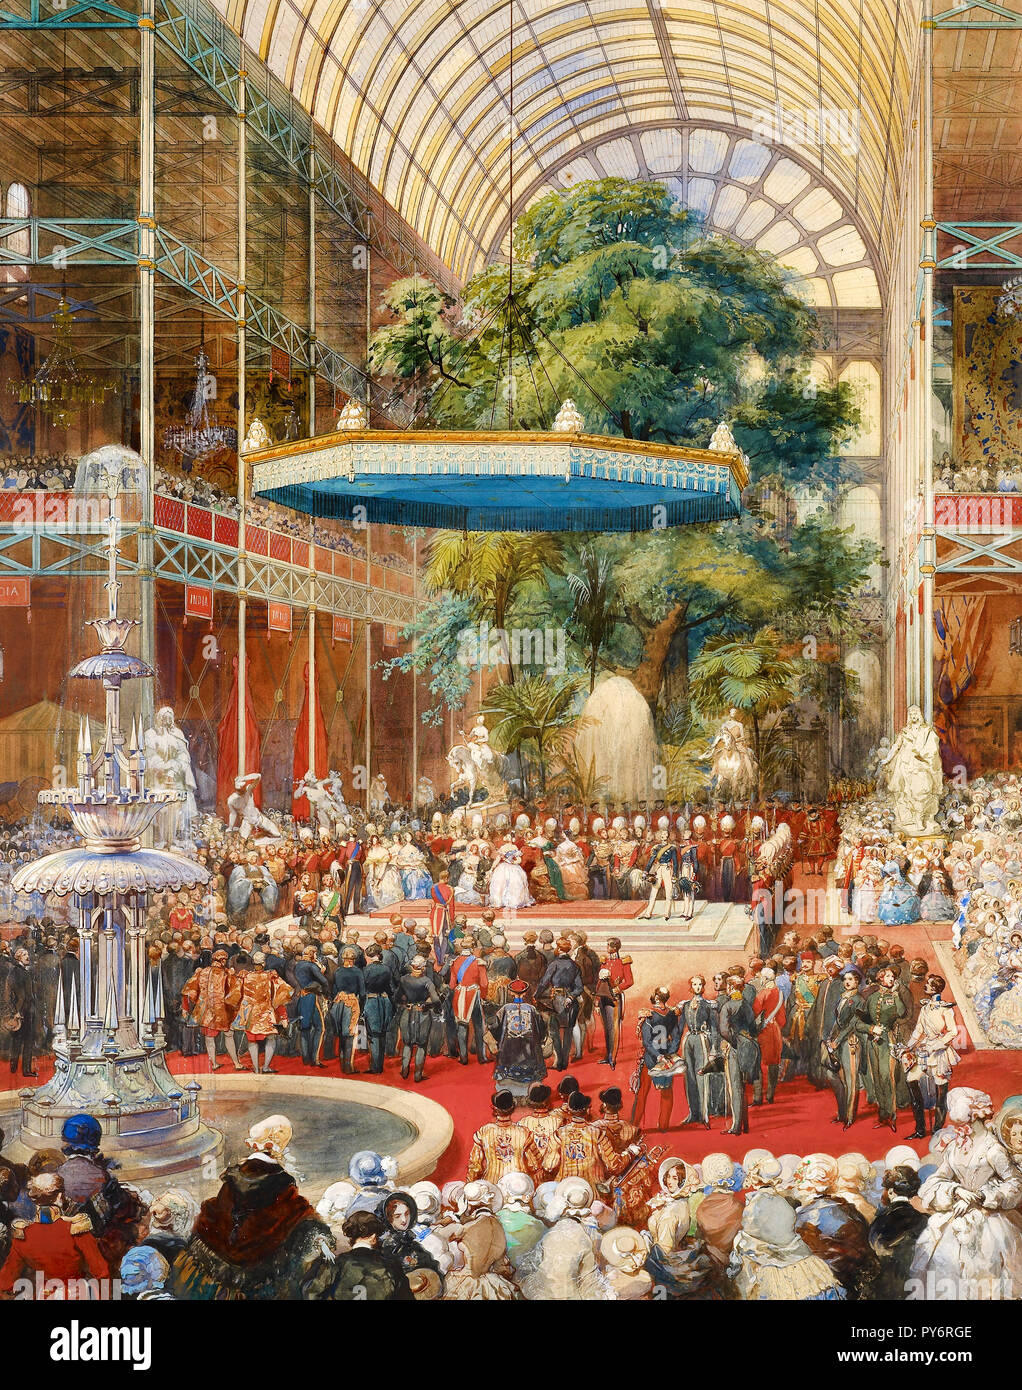 Eugene Louis Lami, Eröffnung der großen Ausstellung, 1. Mai 1851, 1851 Bleistift, Feder und Tusche, Aquarell, Royal Collection des Vereinigten Königreichs. Stockfoto